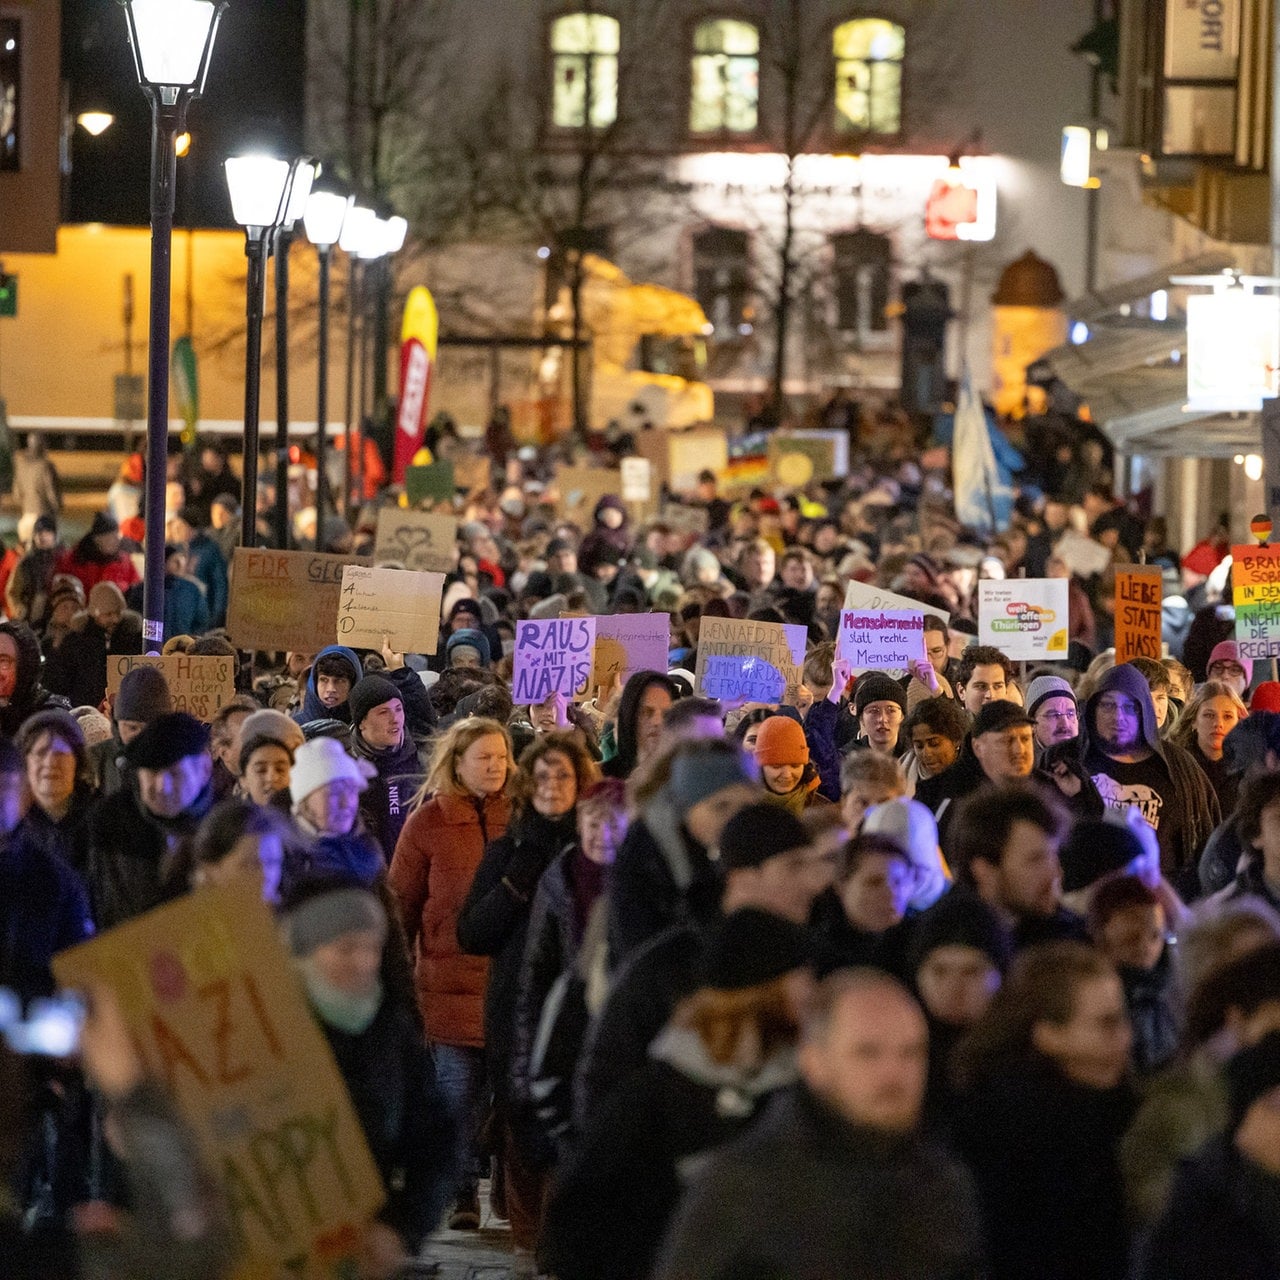 2.200 Menschen demonstrieren in Ilmenau gegen Rechtextremismus